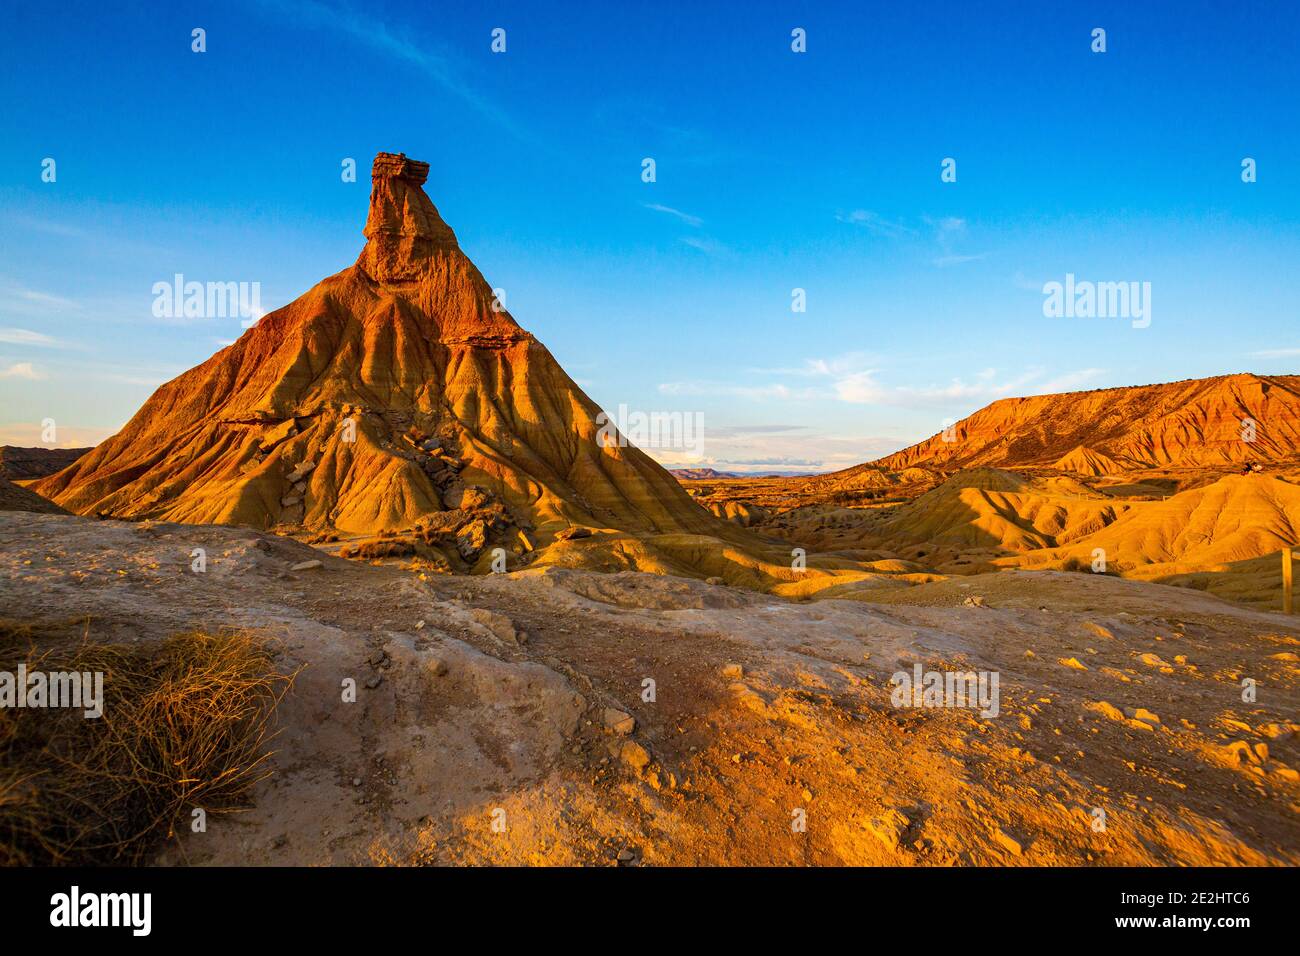 Spain: landscape, semi-desert natural region of the Bardenas Reales, Navarre. Castil de tierra, most famous landmark of Bardenas desert. Stock Photo